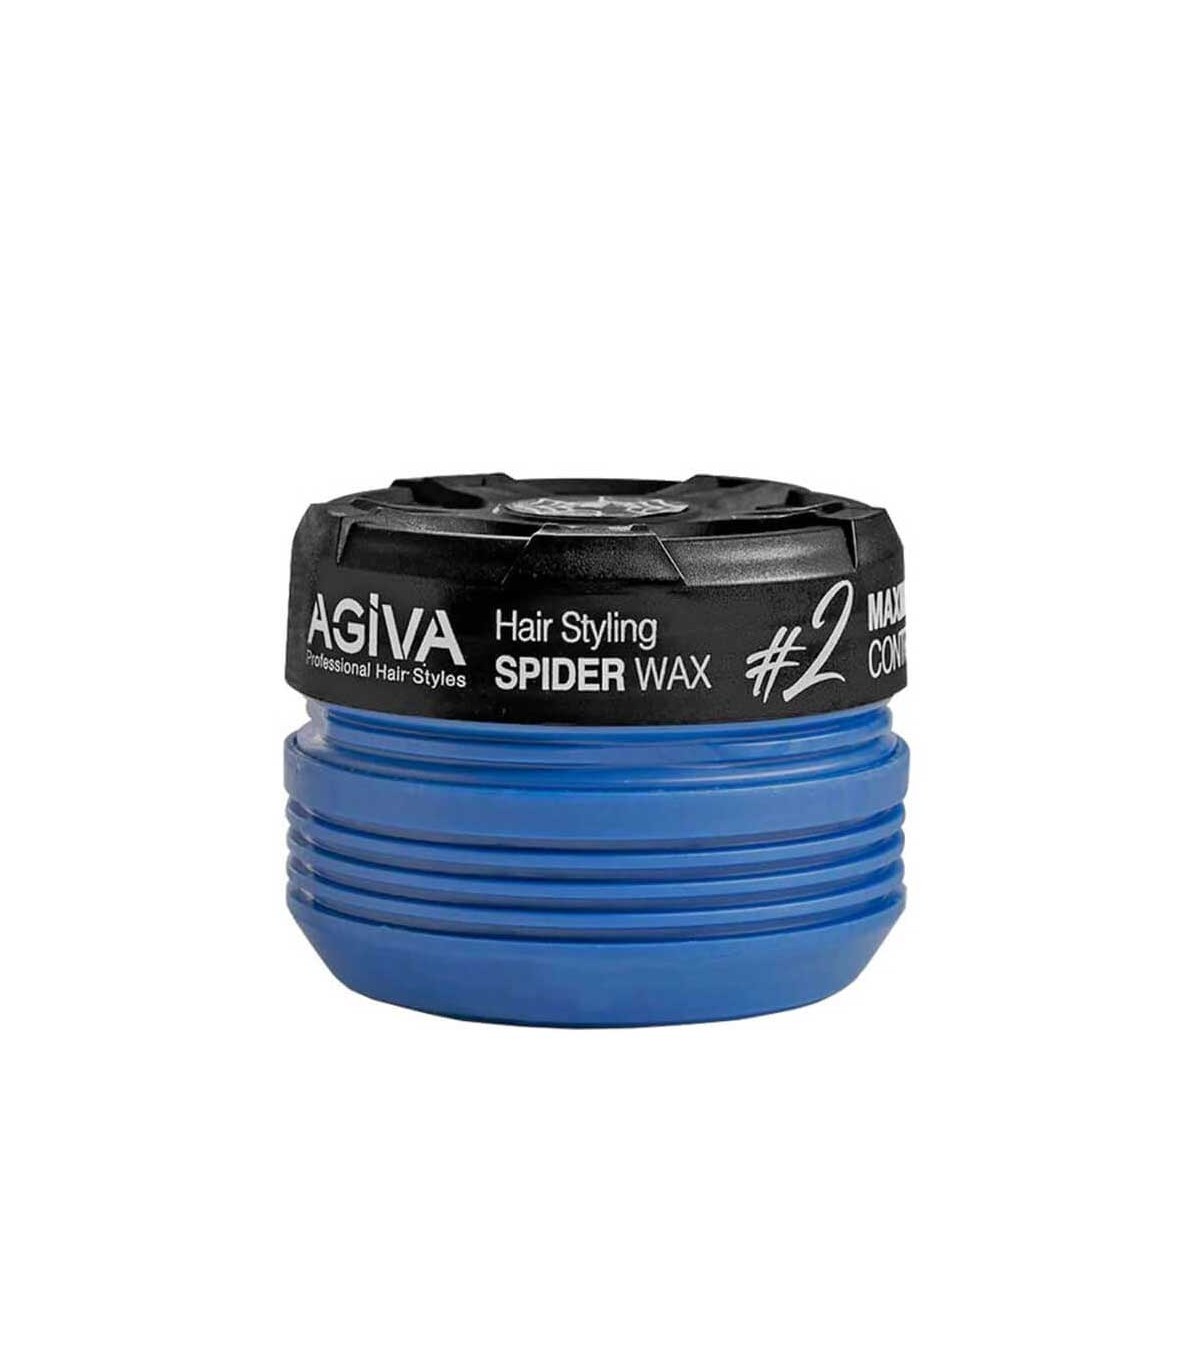 واکس مو اسپایدر آگیوا هشتک 2 آبی AGIVA Hair Styling Spider Wax